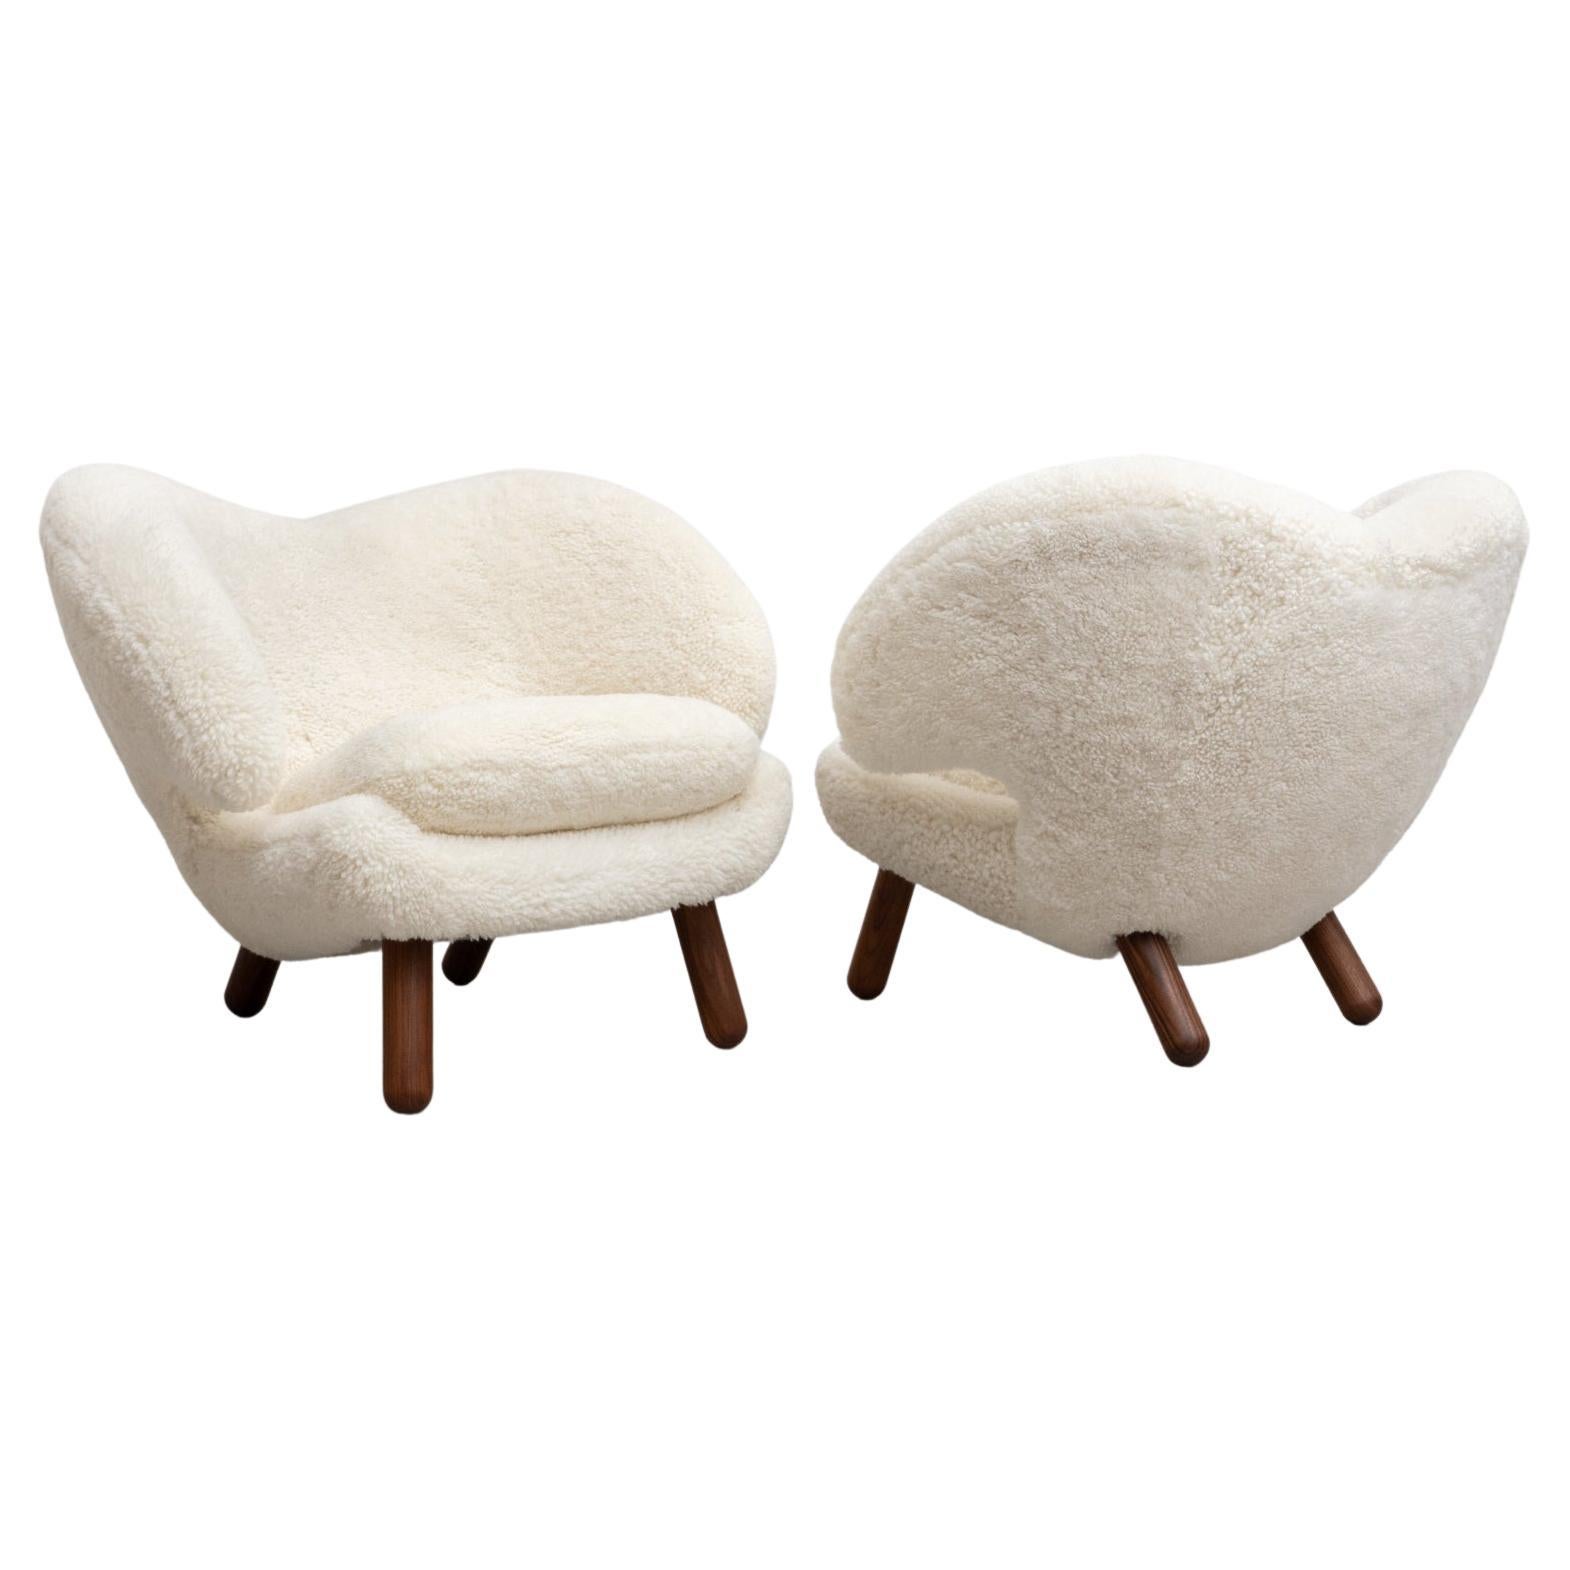 Ensemble de deux chaises Pelican de Finn Juhl tapissées de peau de mouton de Gotland